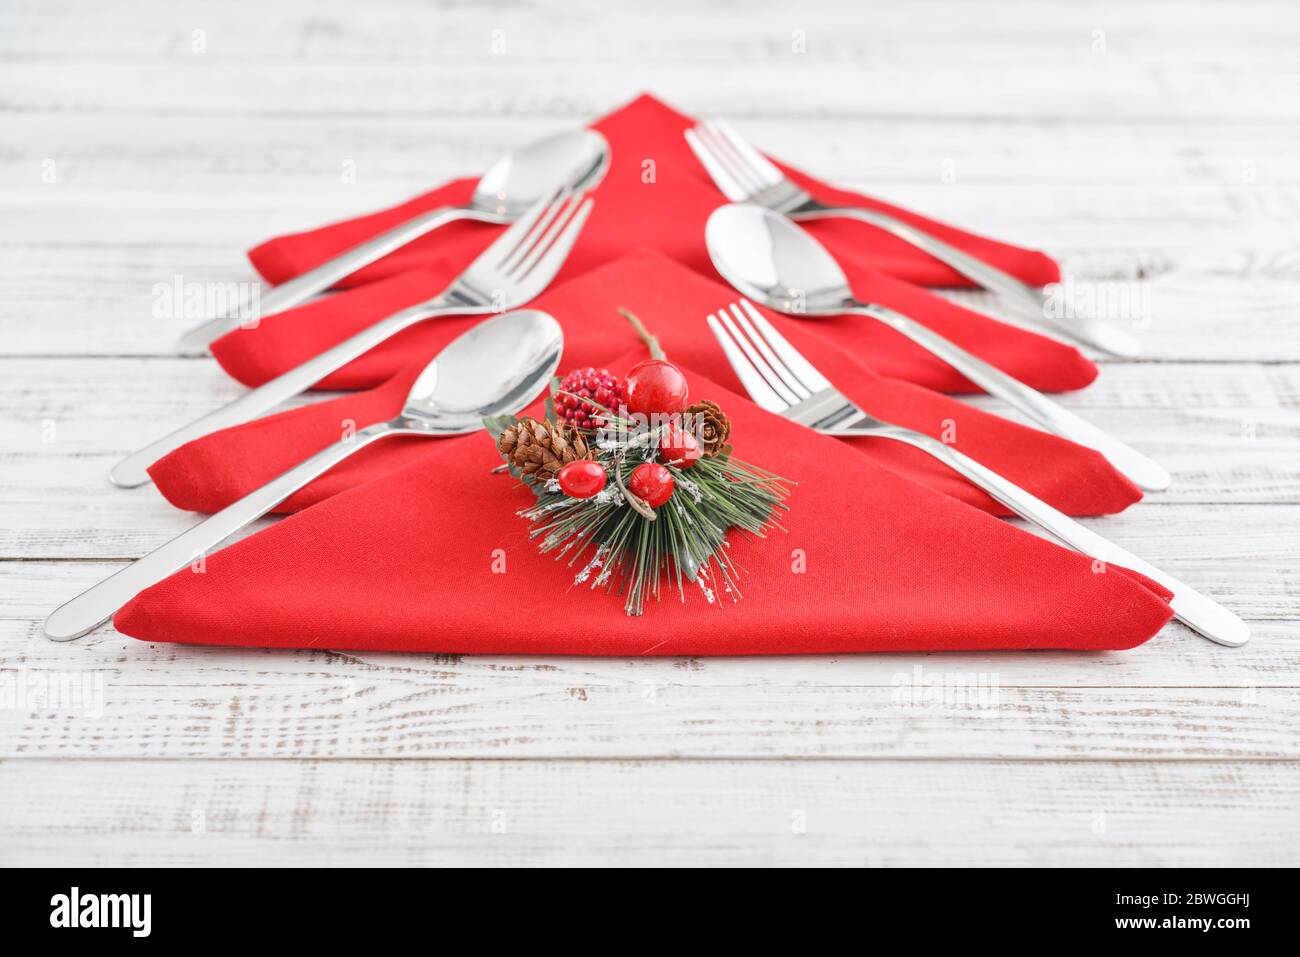 Serviettes rouges en forme d'arbre de Noël avec fourchettes et cuillères sur fond de bois Banque D'Images